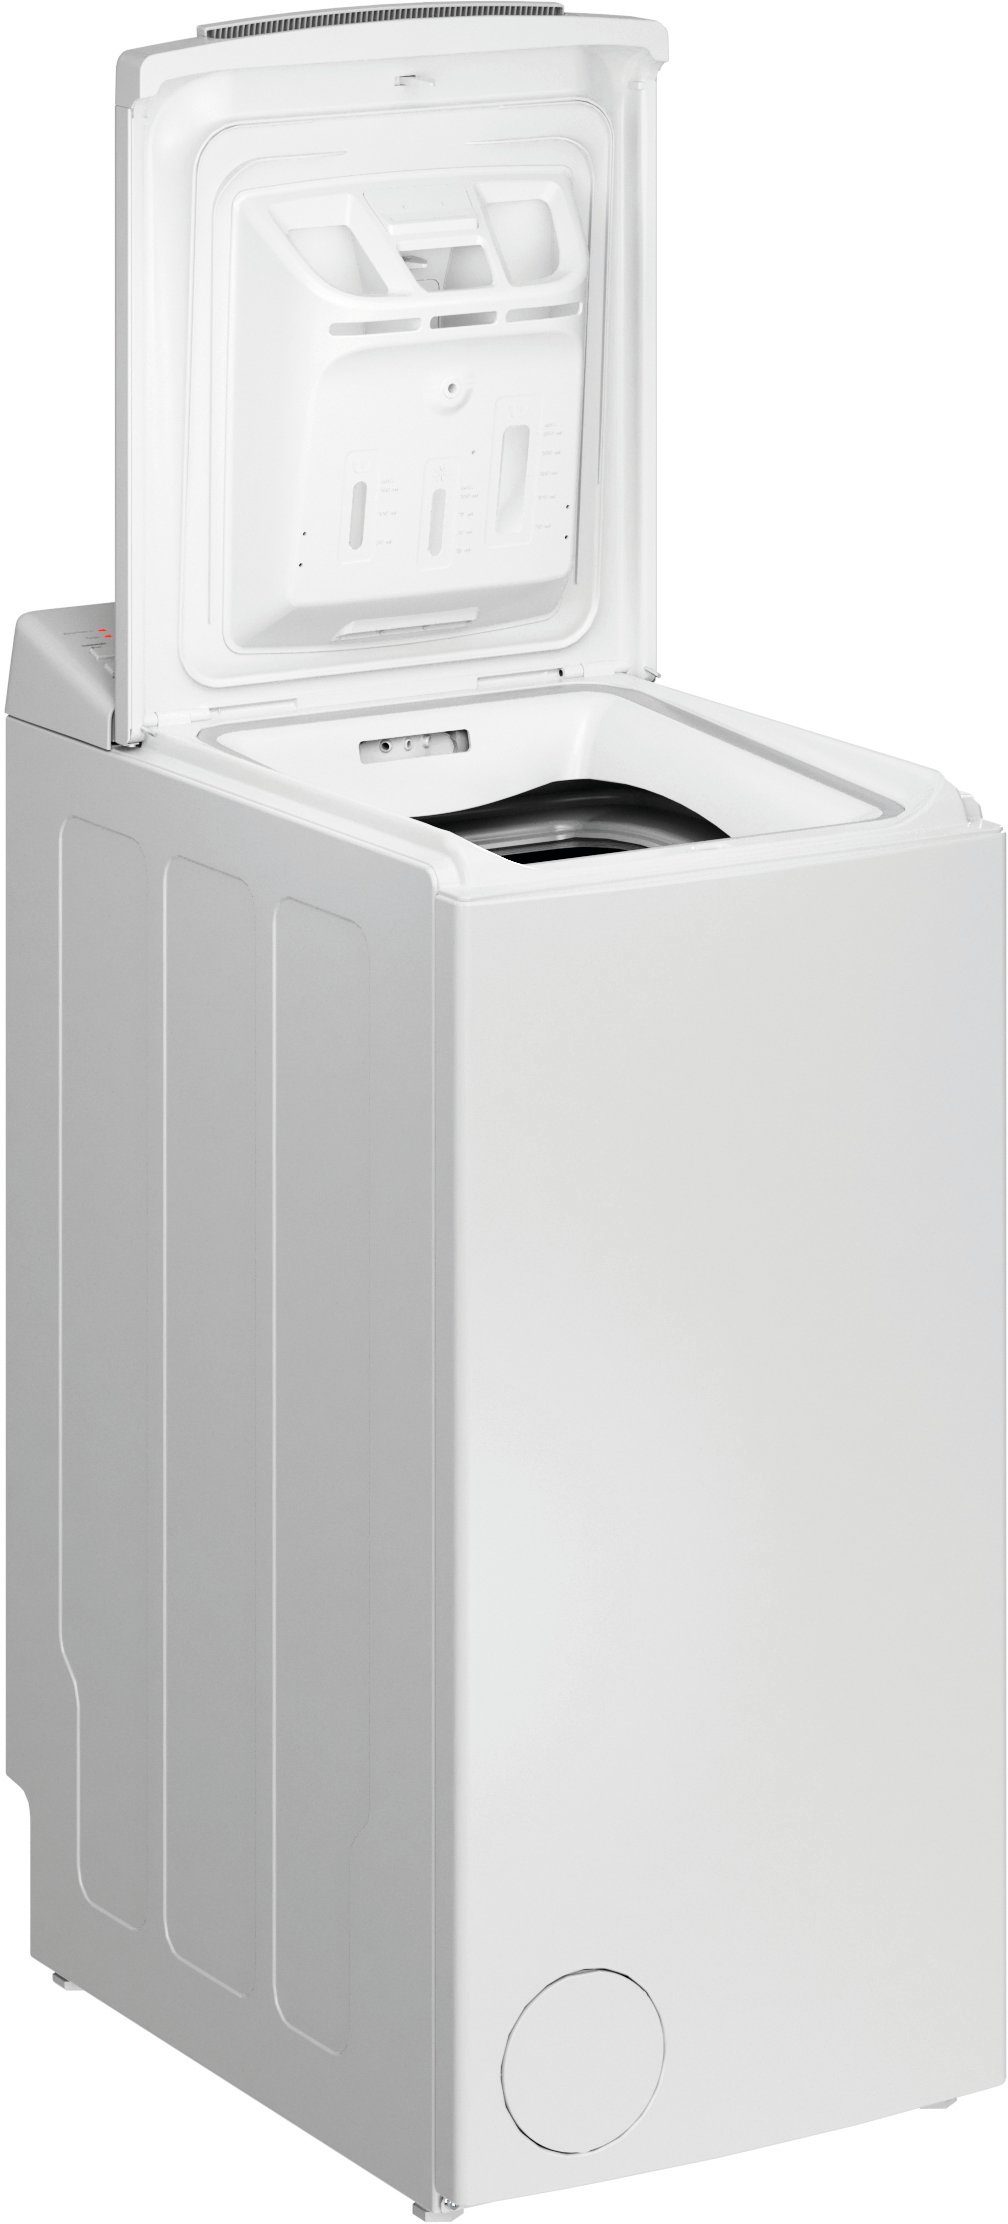 BAUKNECHT Waschmaschine Toplader WMT Eco Star 6524 Di N, 6,5 kg, 1200 U/min | Toplader